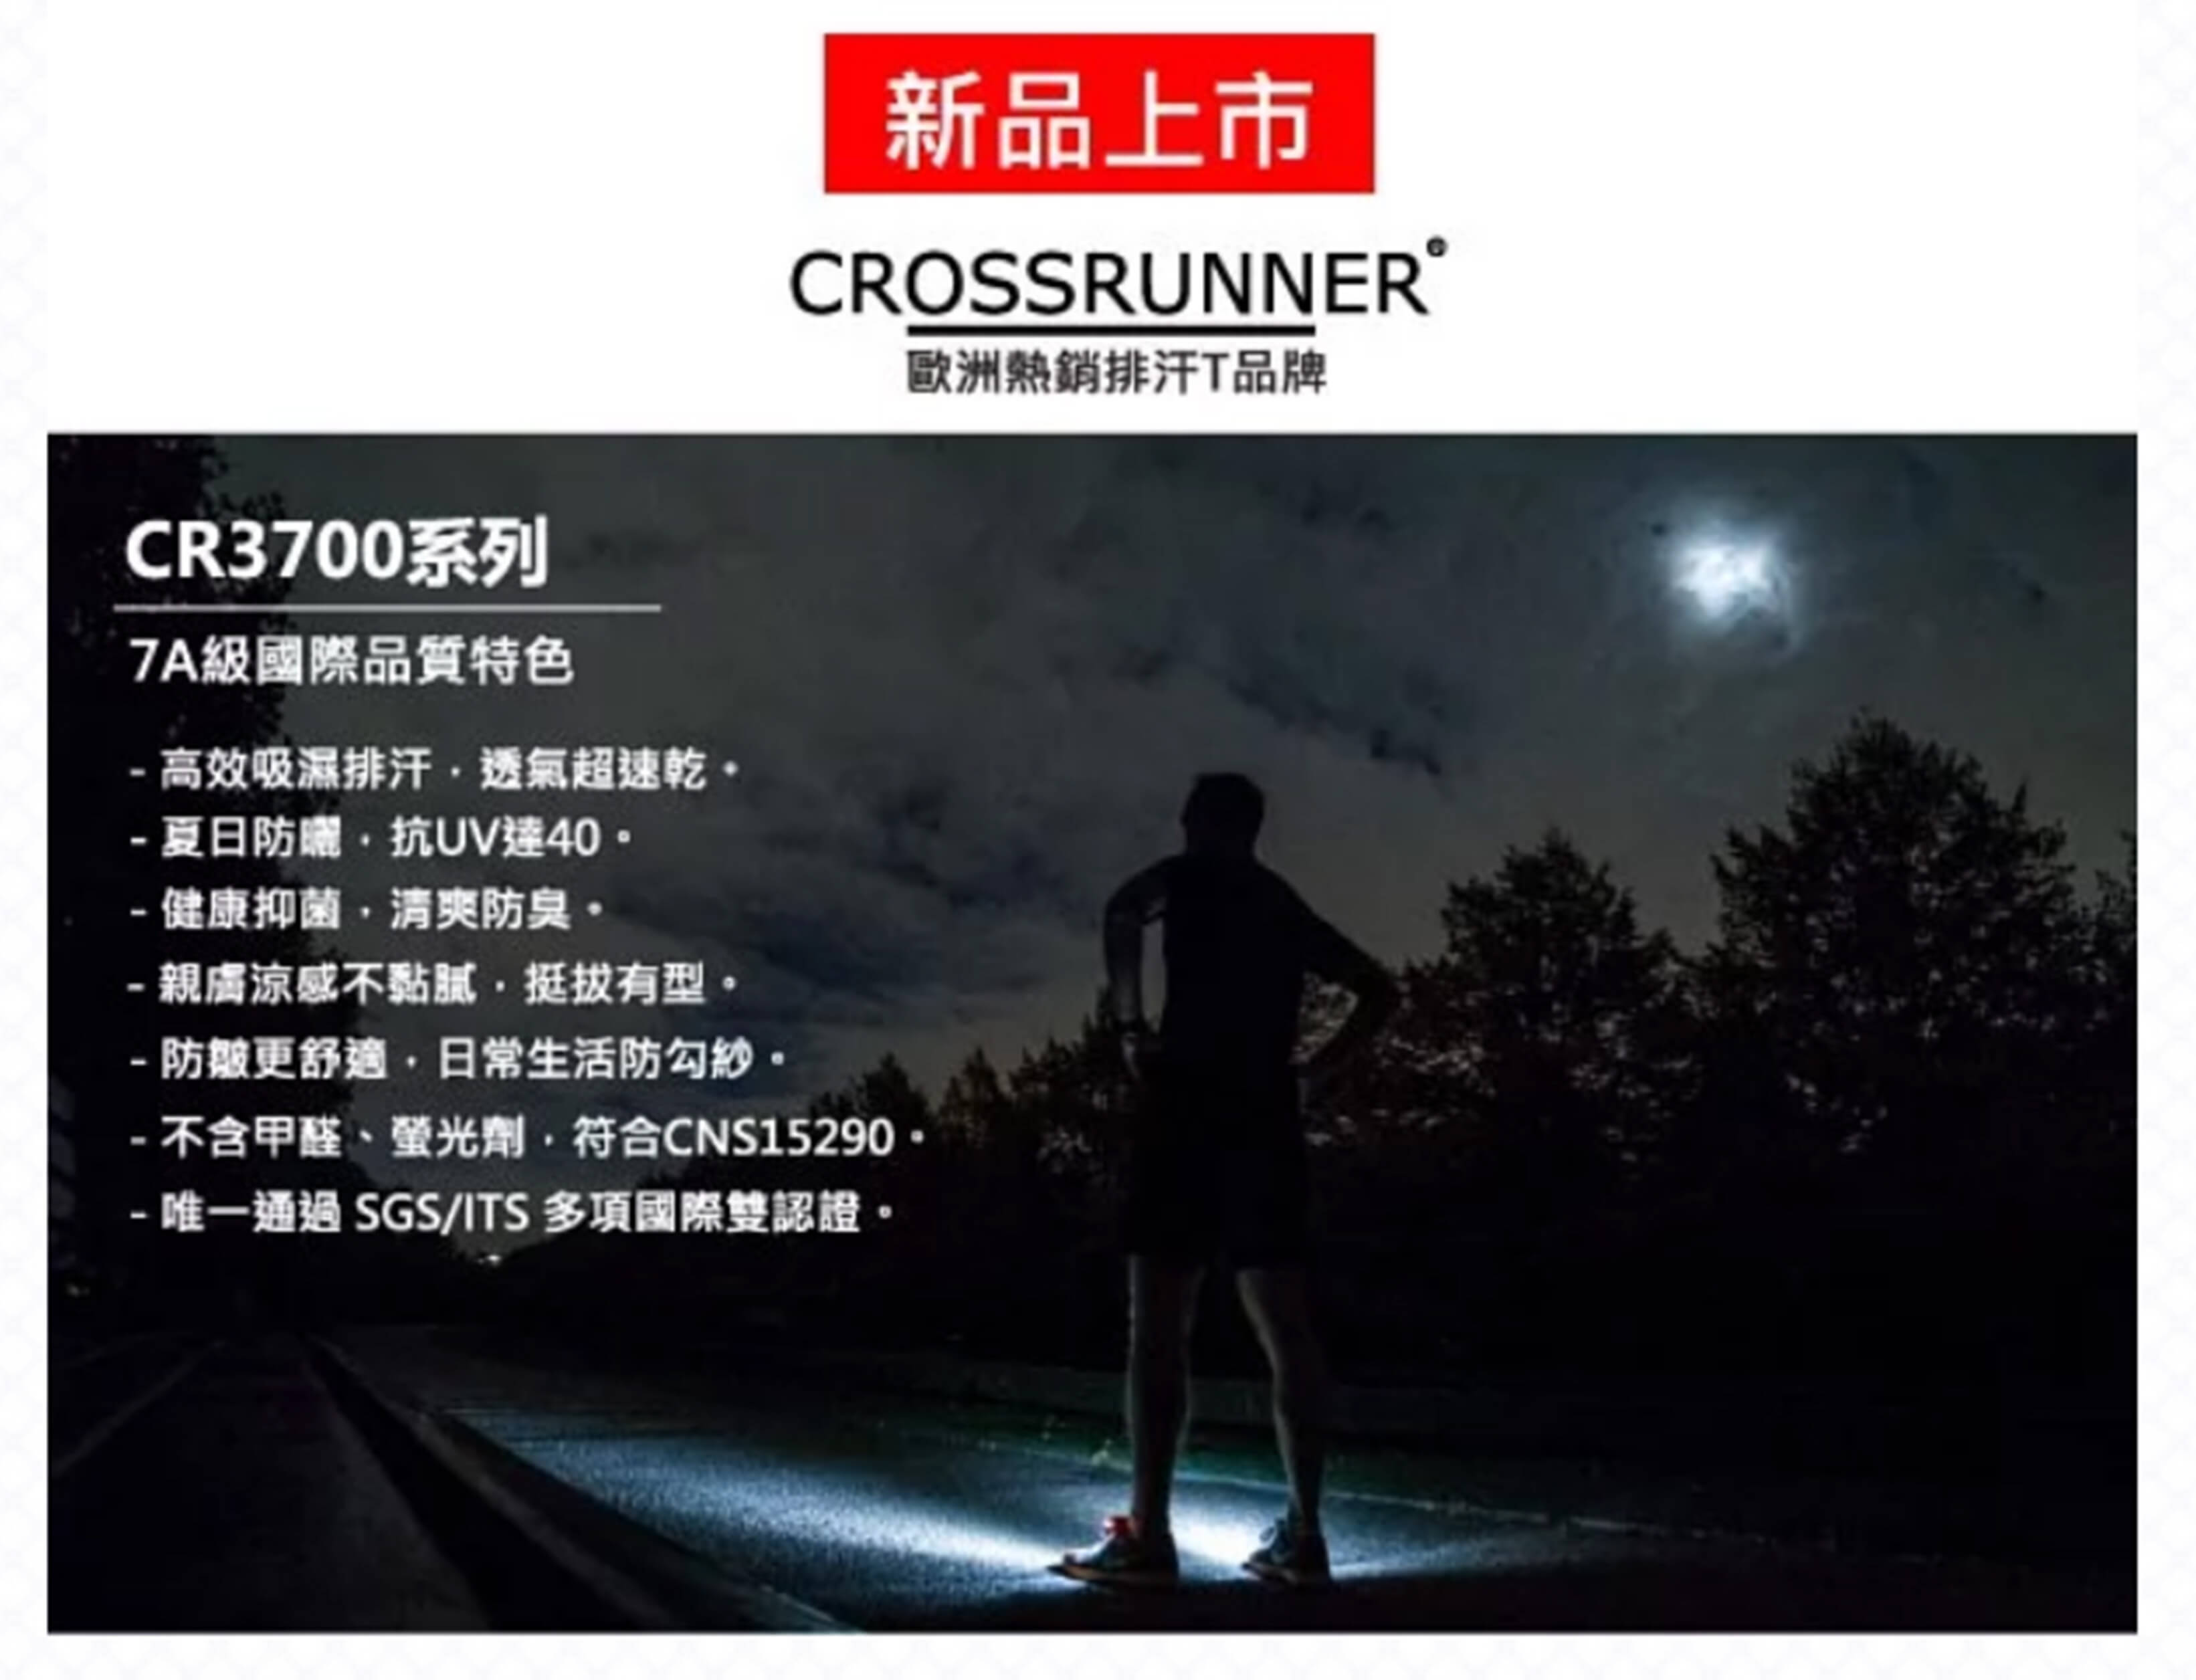 Crossrunner